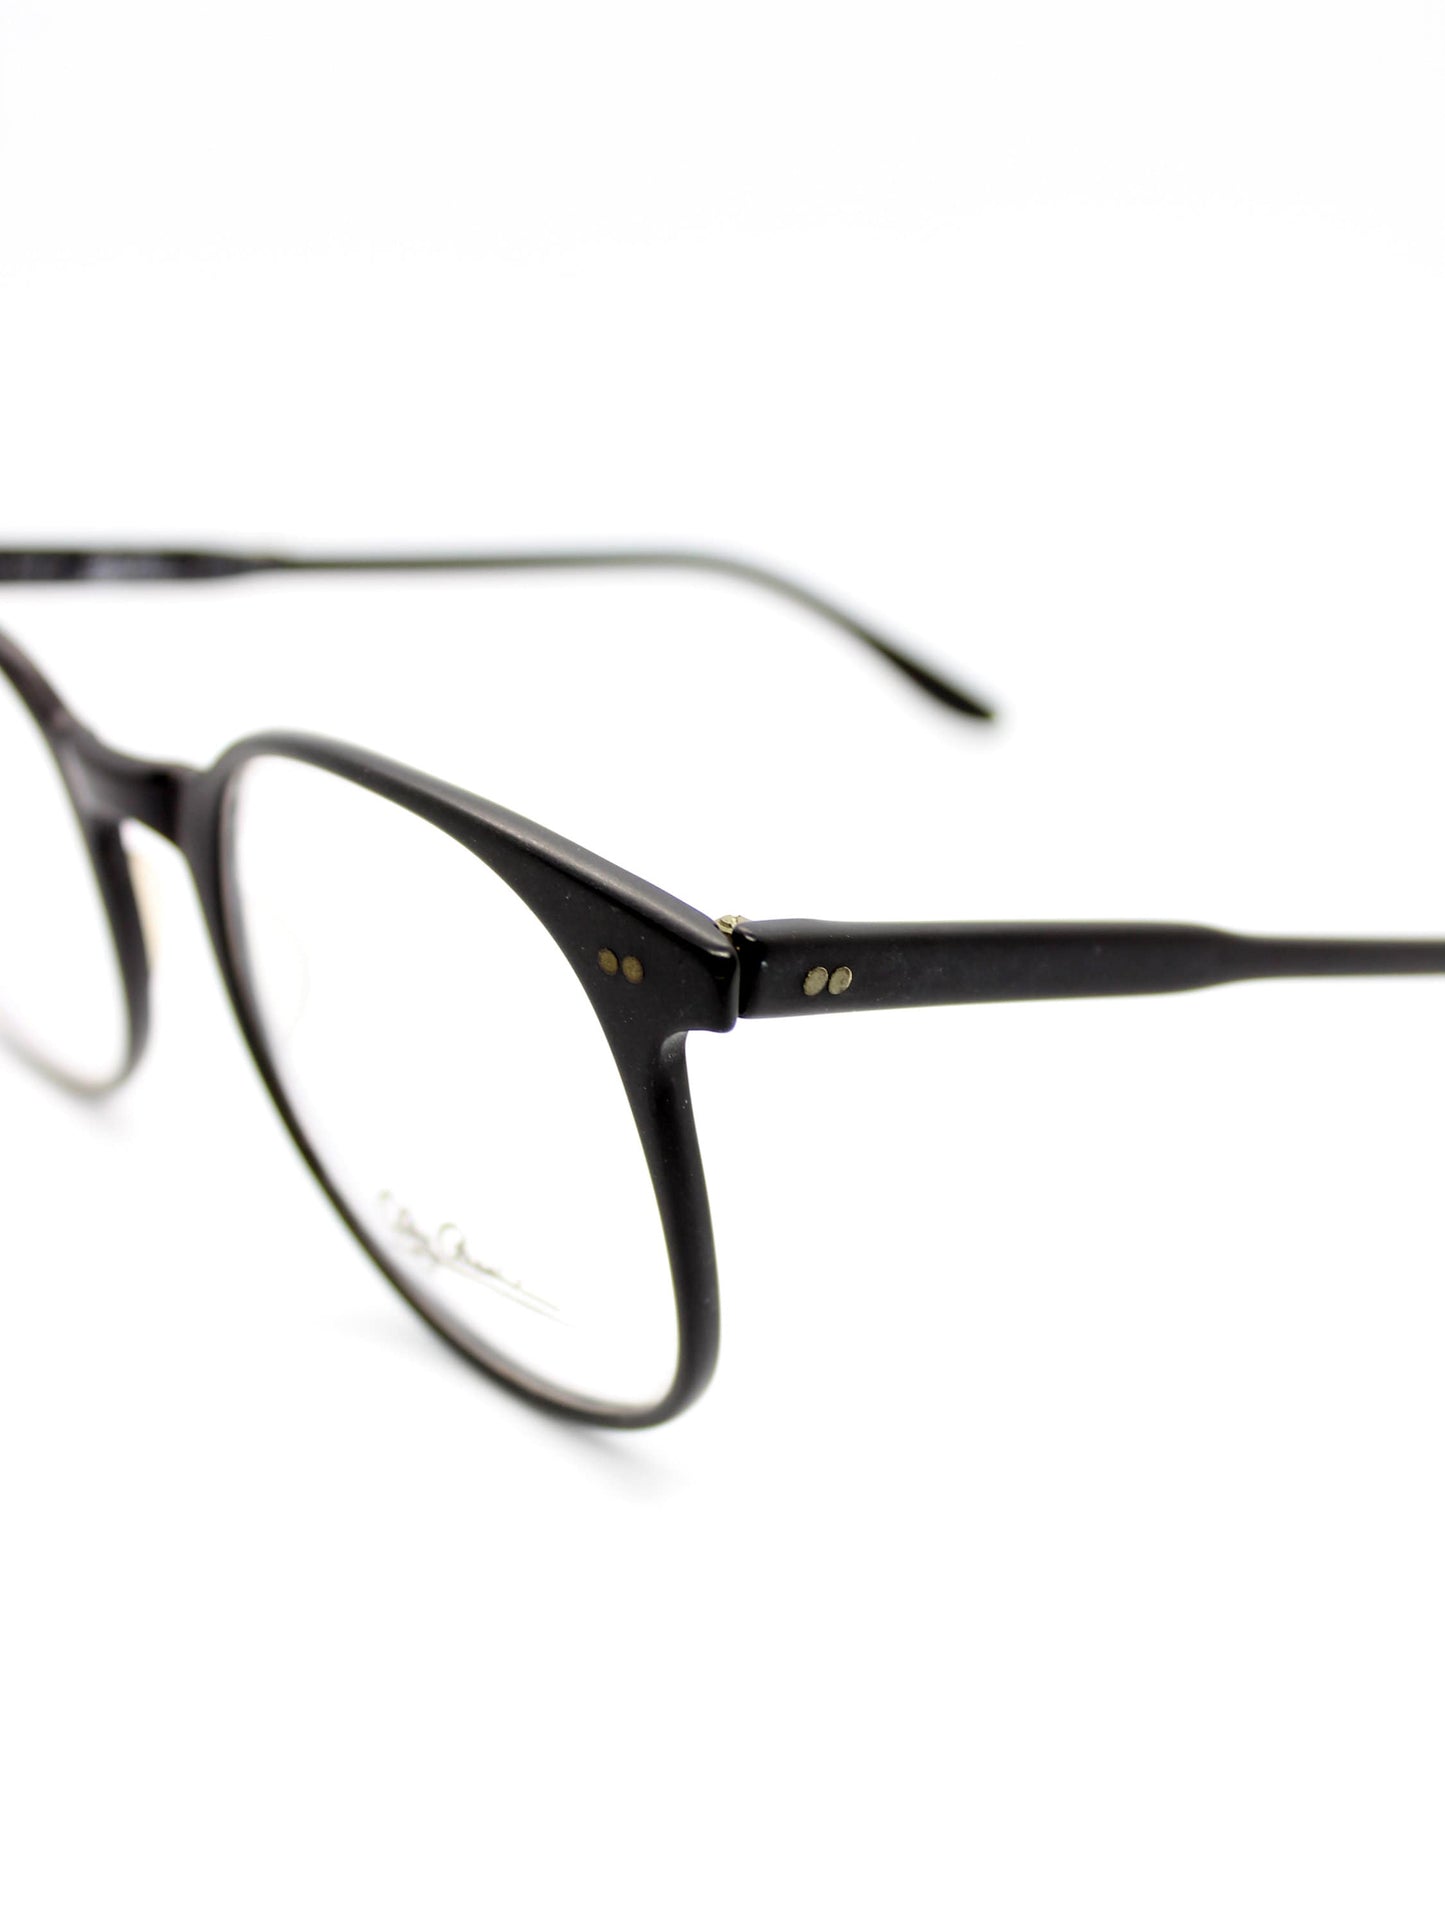 Oleg Cassini Black Matte Eyeglasses - New Old stock